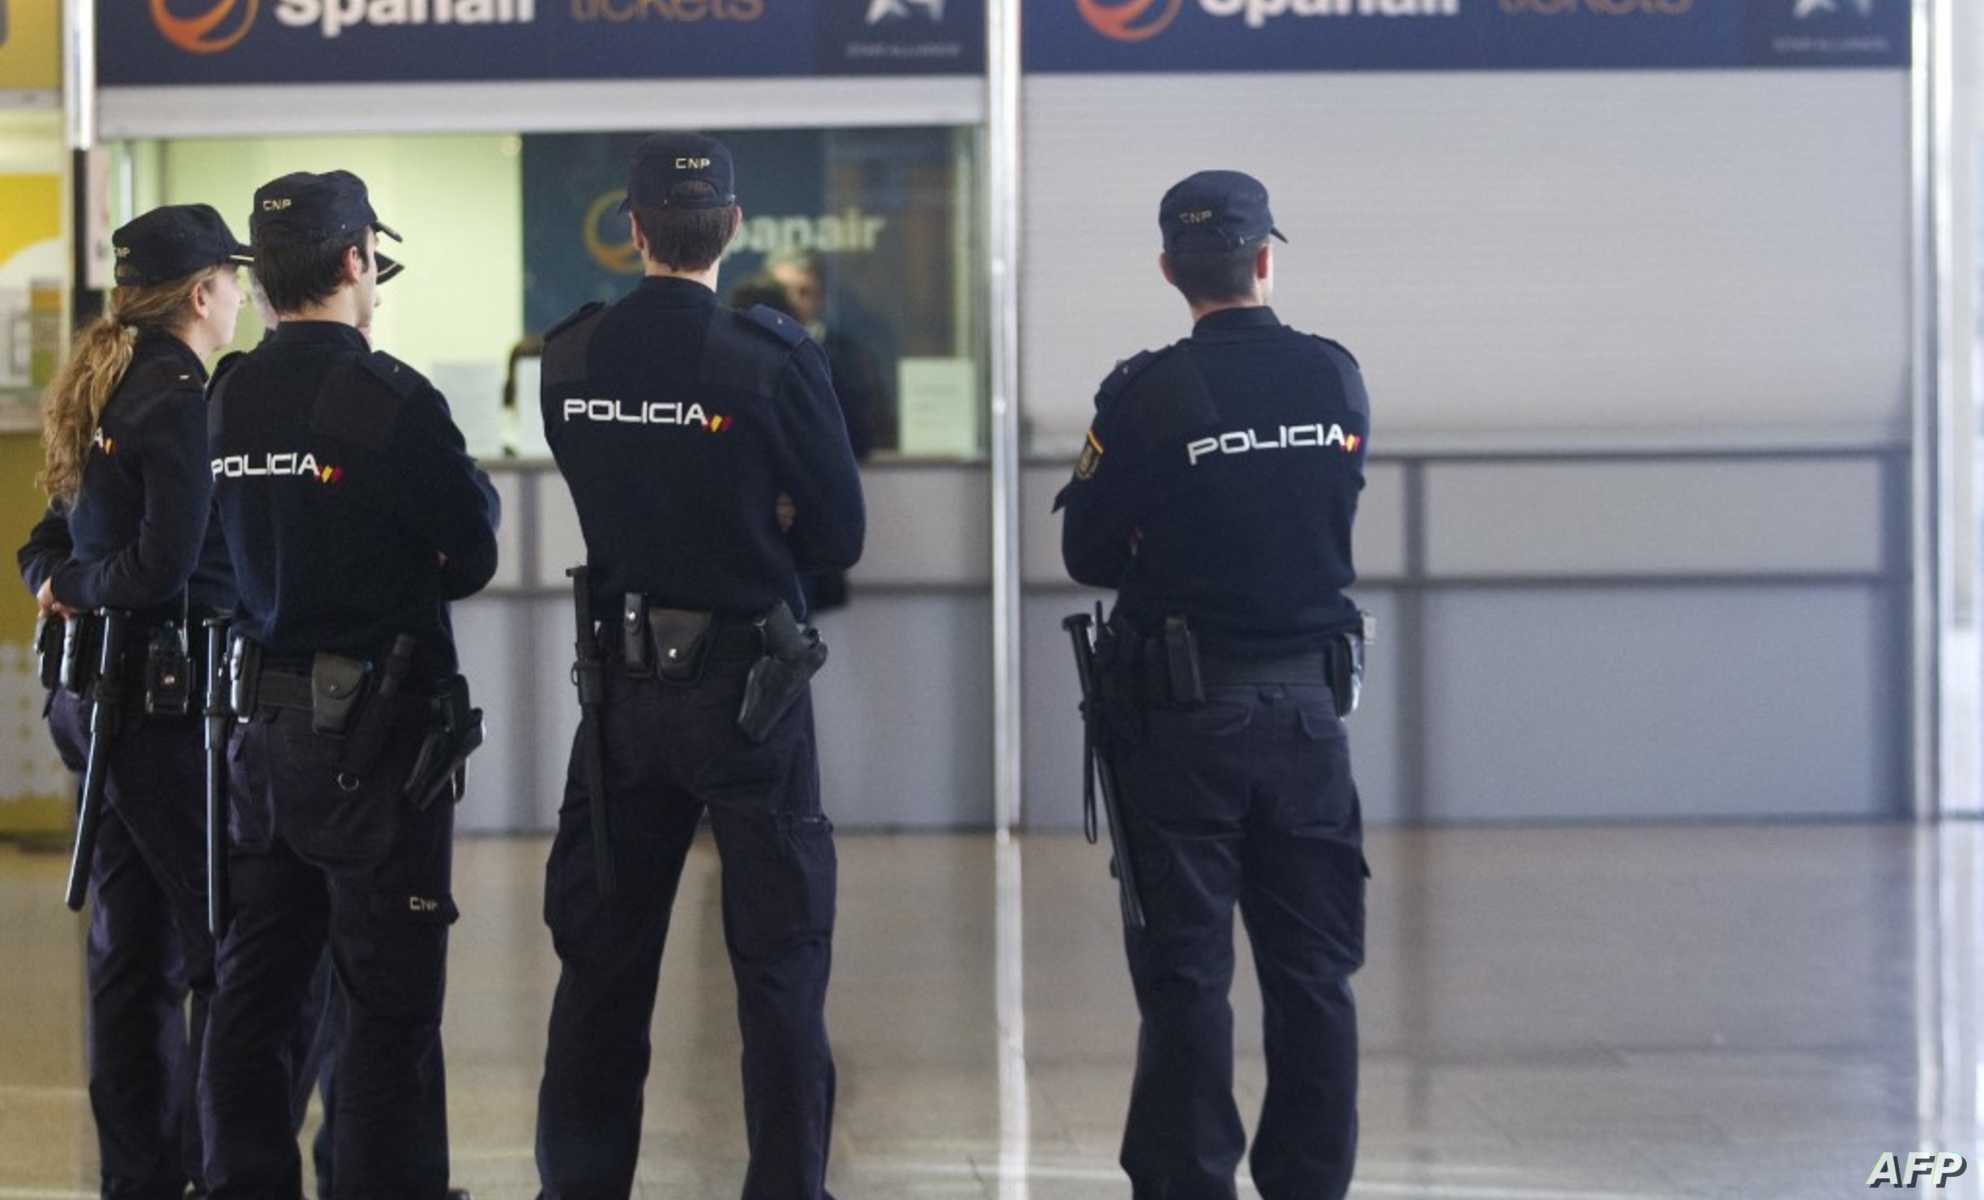 هروب جماعي لحراكة مغاربة في مطار مدريد